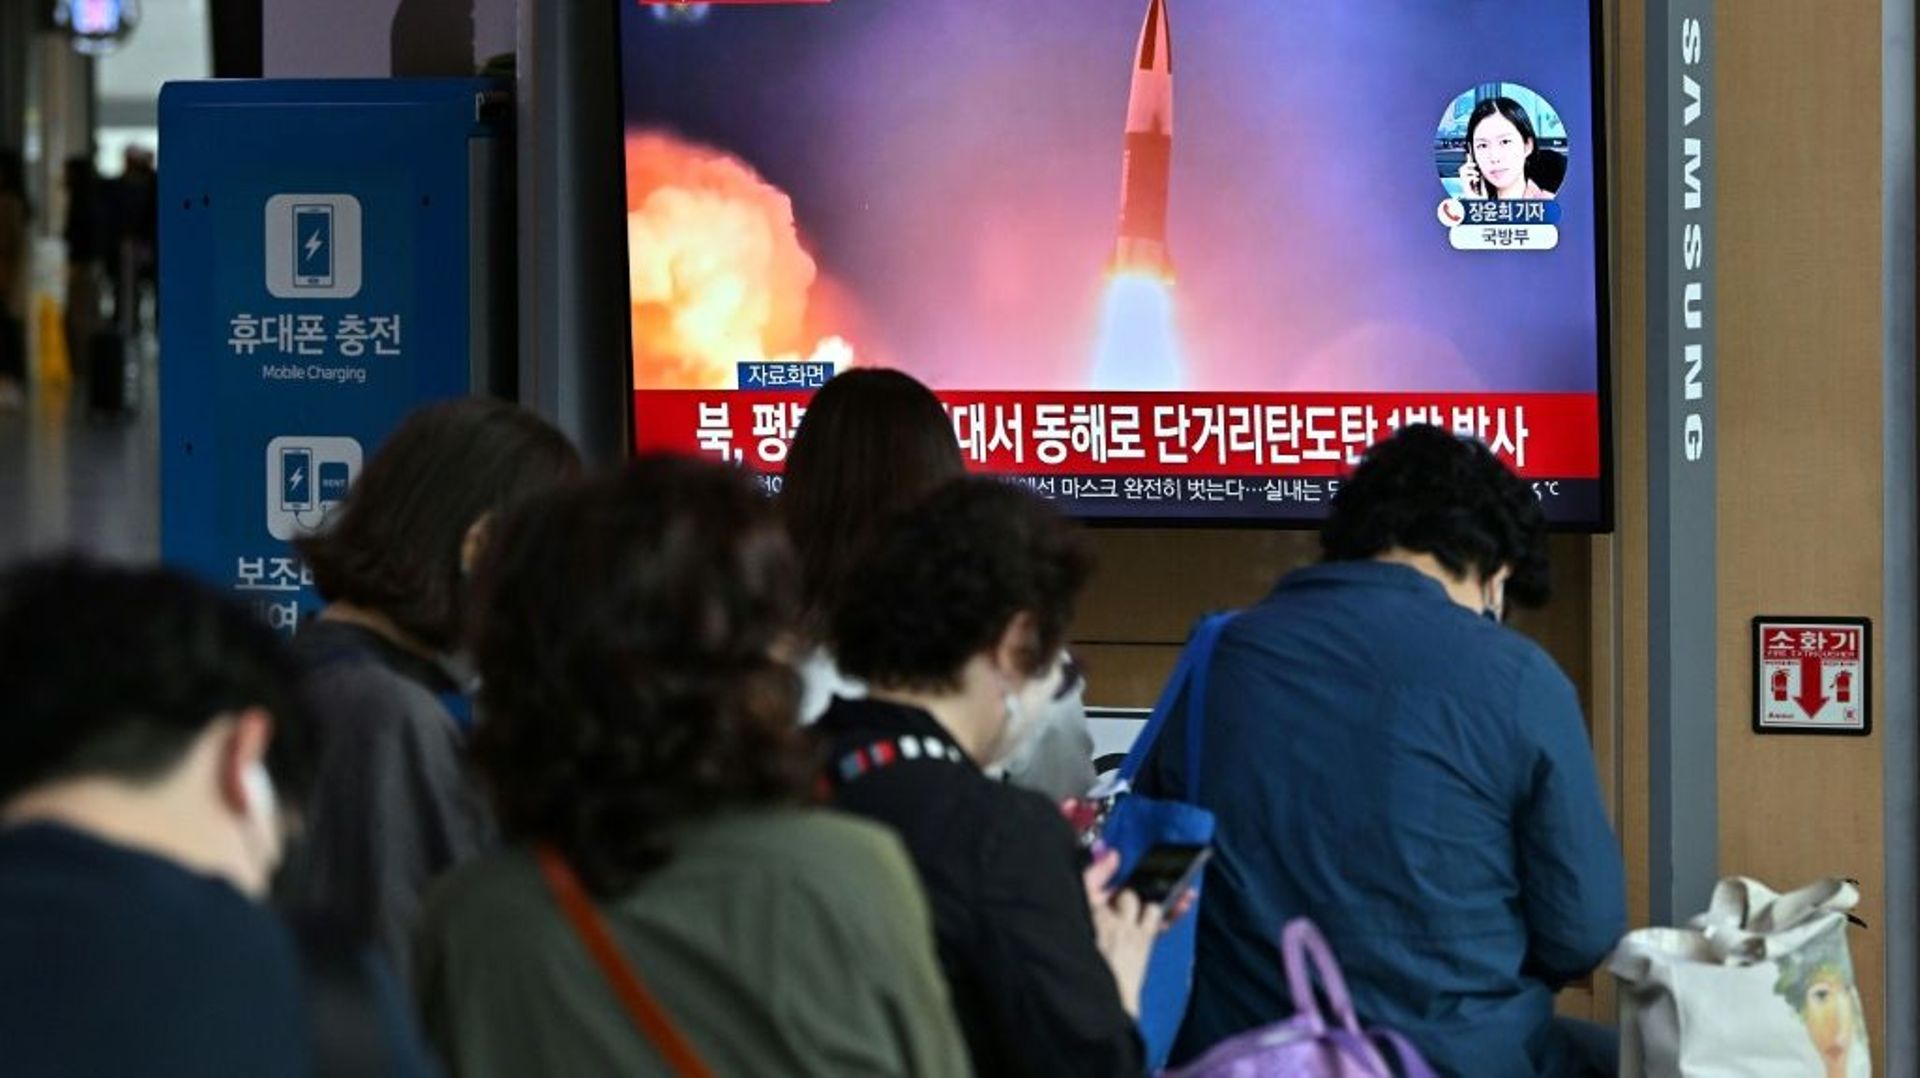 Des voyageurs devant un écran de télévision montrant des images d’archives d’un test de missile nord-coréen, dans une gare de Séoul, le 25 septembre 2022